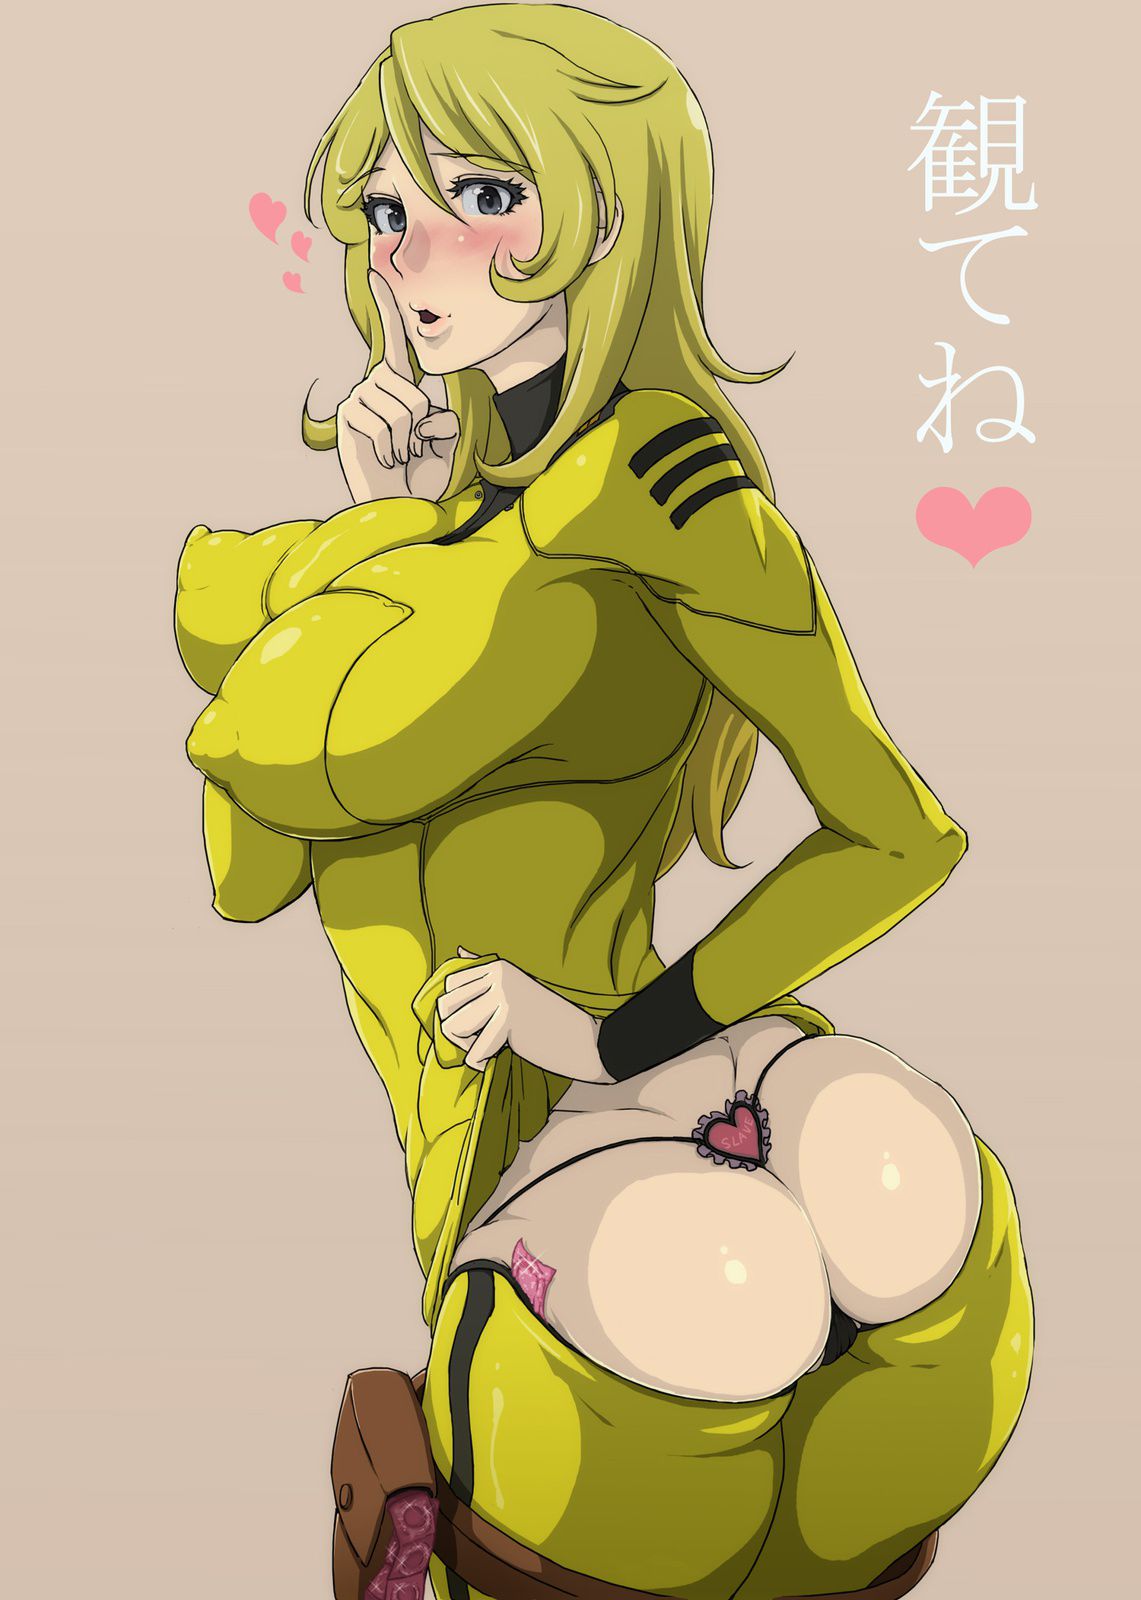 [Secondary Erotic] Space Battleship Yamato Moriyuki Erotic Image Summary [30 Sheets] 10